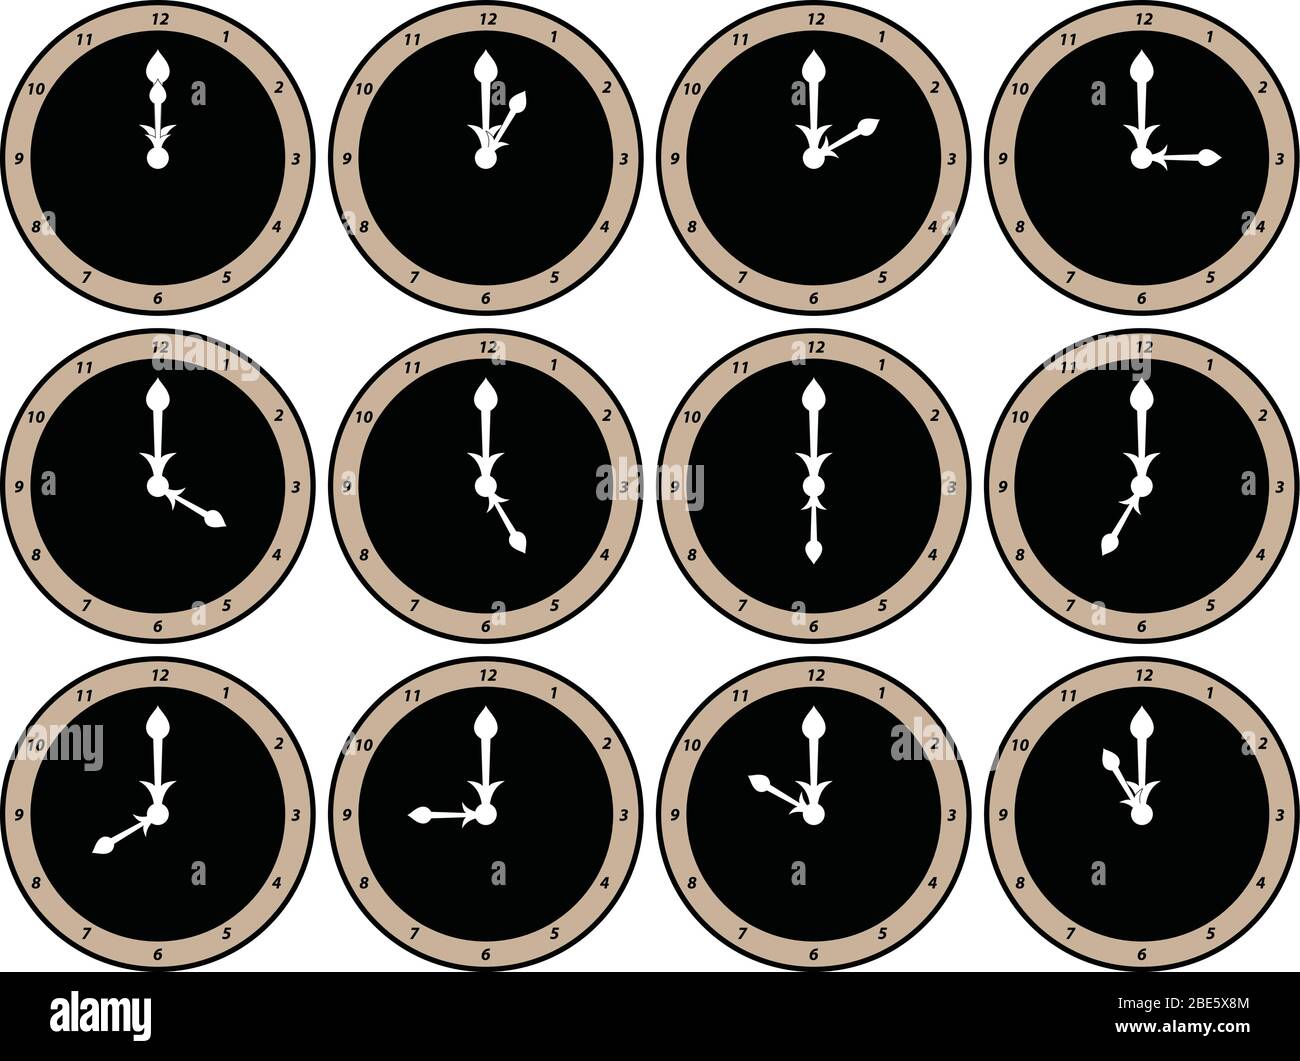 Zwölf analoge Ziffblätter mit weißen Stunden- und Minutenzeigern, die die Uhrzeit von 12 Uhr bis 11 Uhr anzeigen Stock Vektor